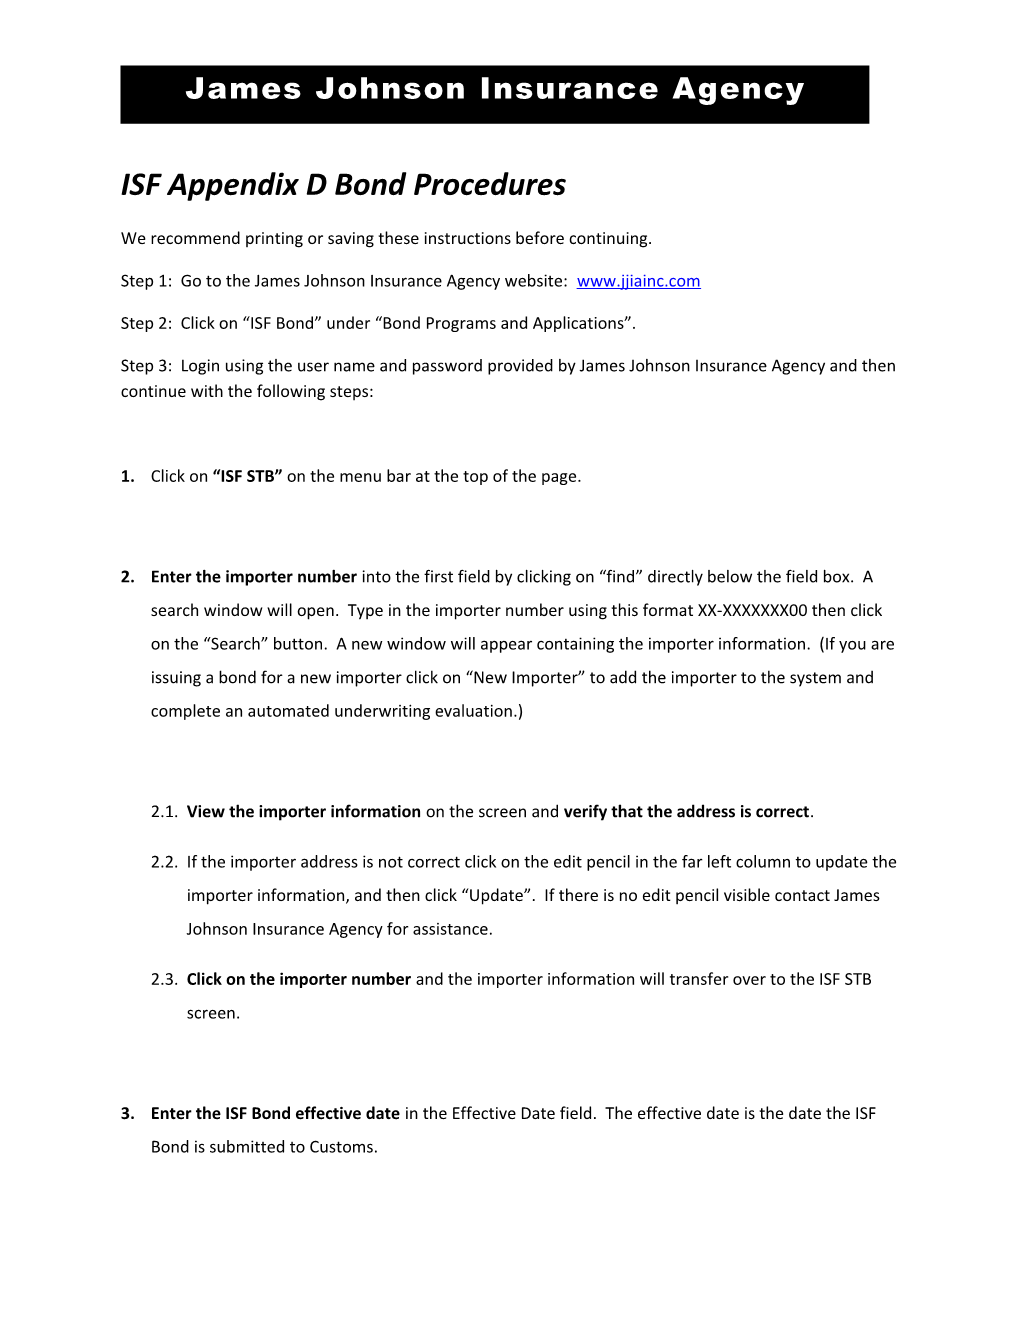 ISF Appendix D Bond Procedures